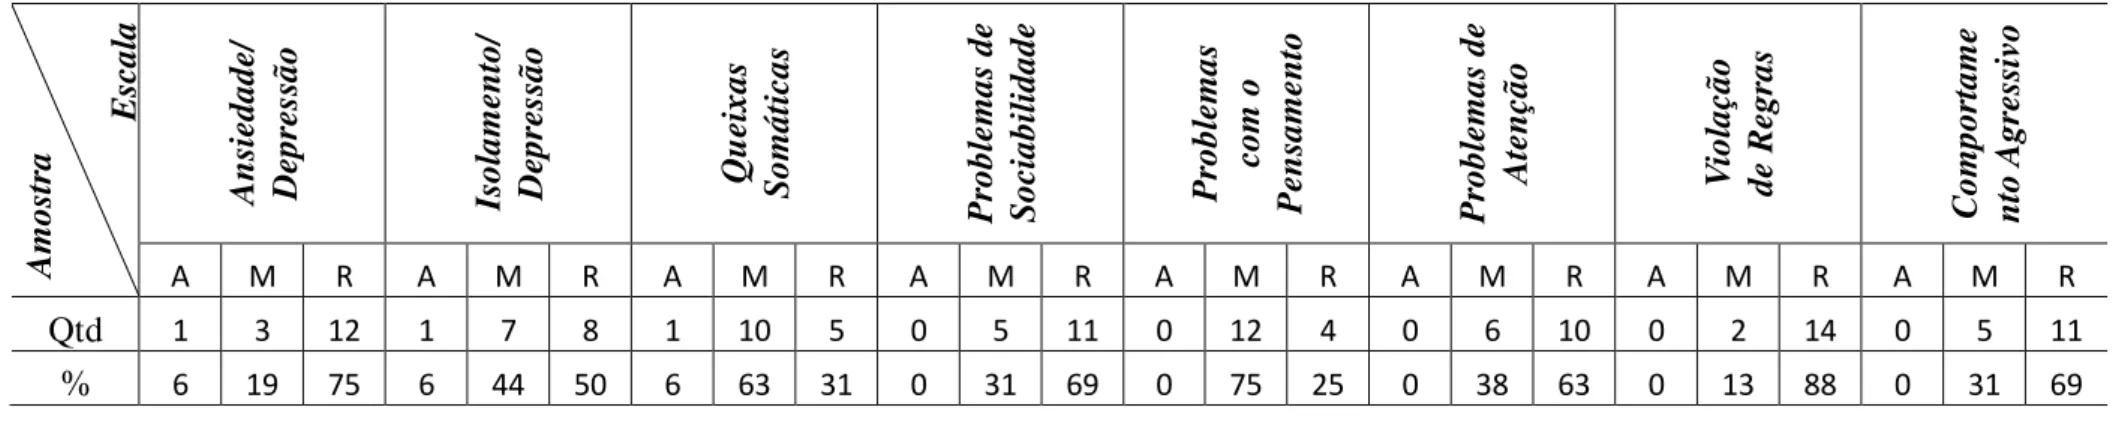 Tabela 10 - Porcentagem dos escores ponderados (T) das Escalas/Síndromes de Problemas de Comportamento verificados no TRF/6-18 do 2º  ano experimental 